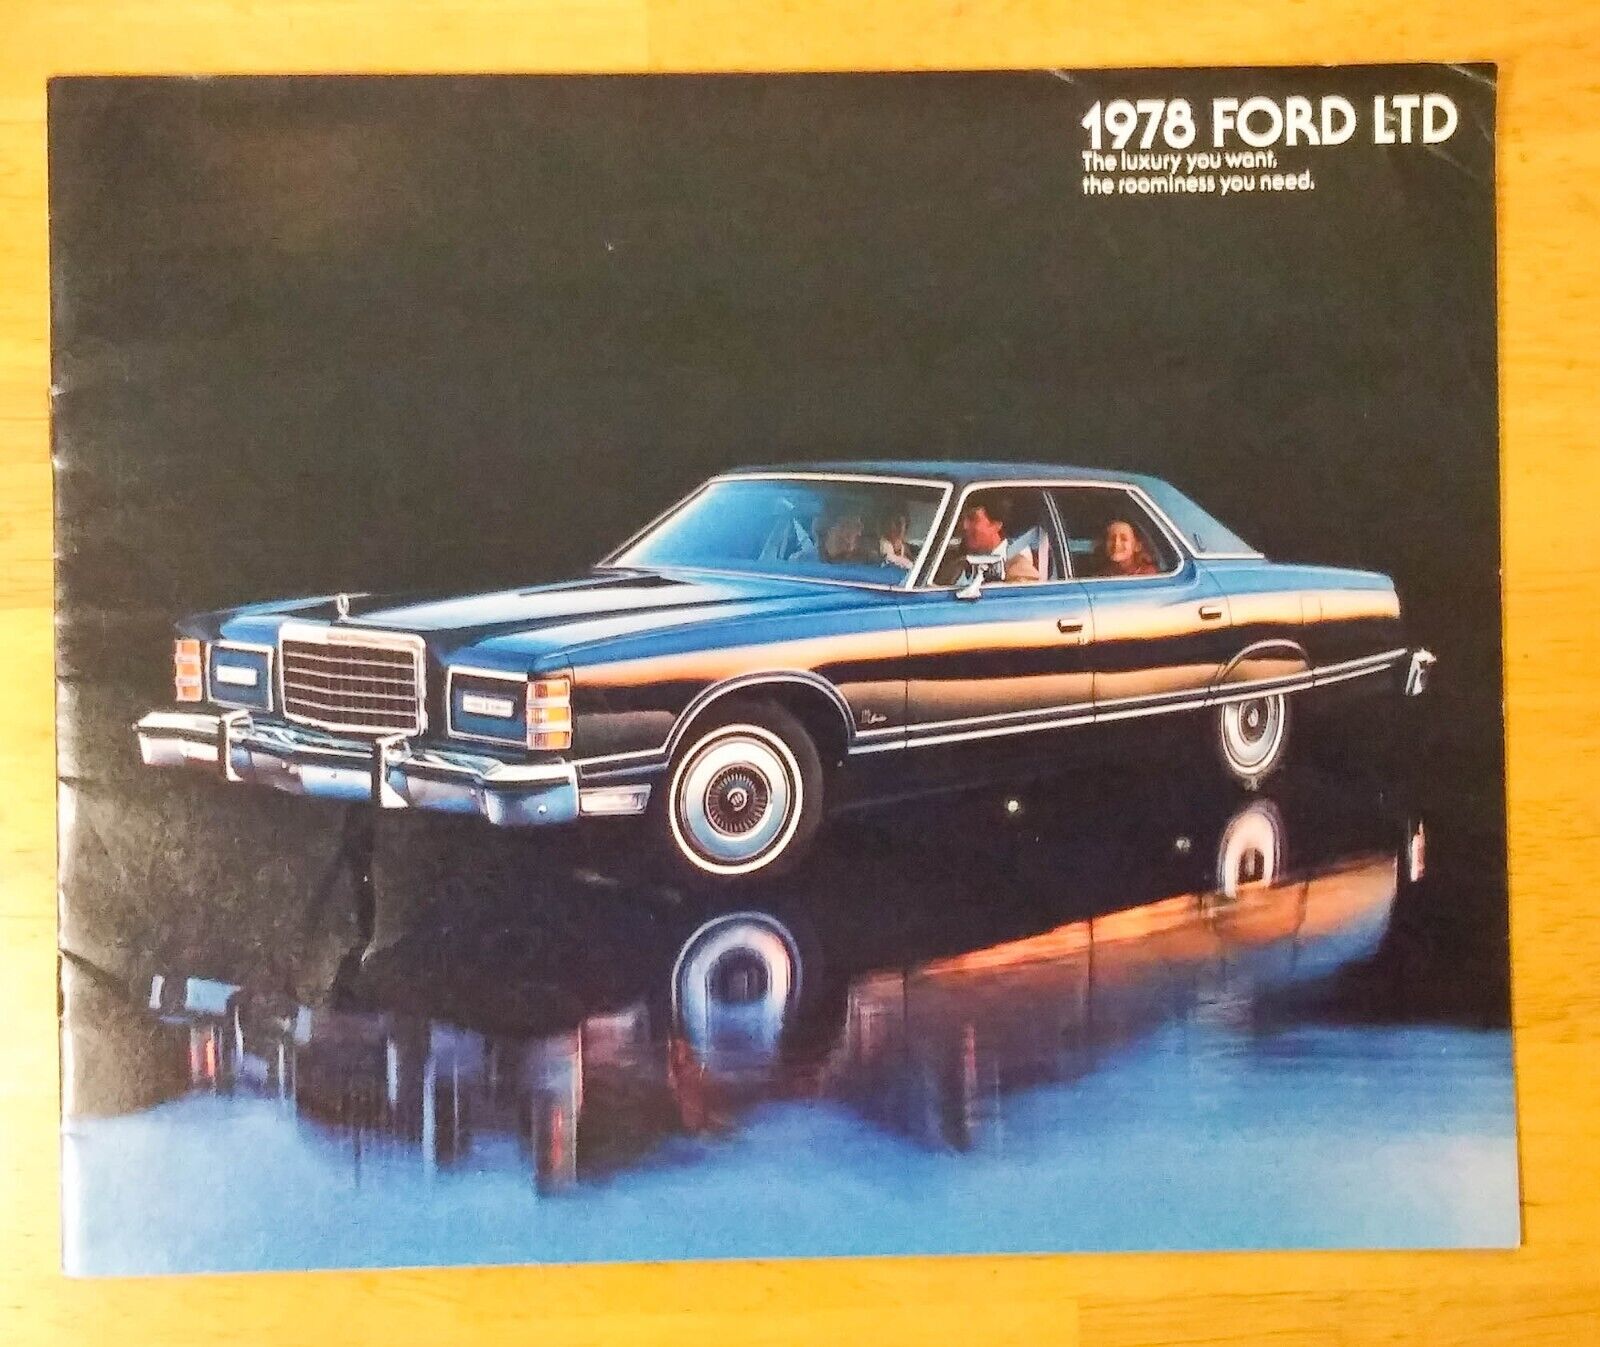 1978 Ford LTD Passenger Car Dealer Magazine Brochure Vintage